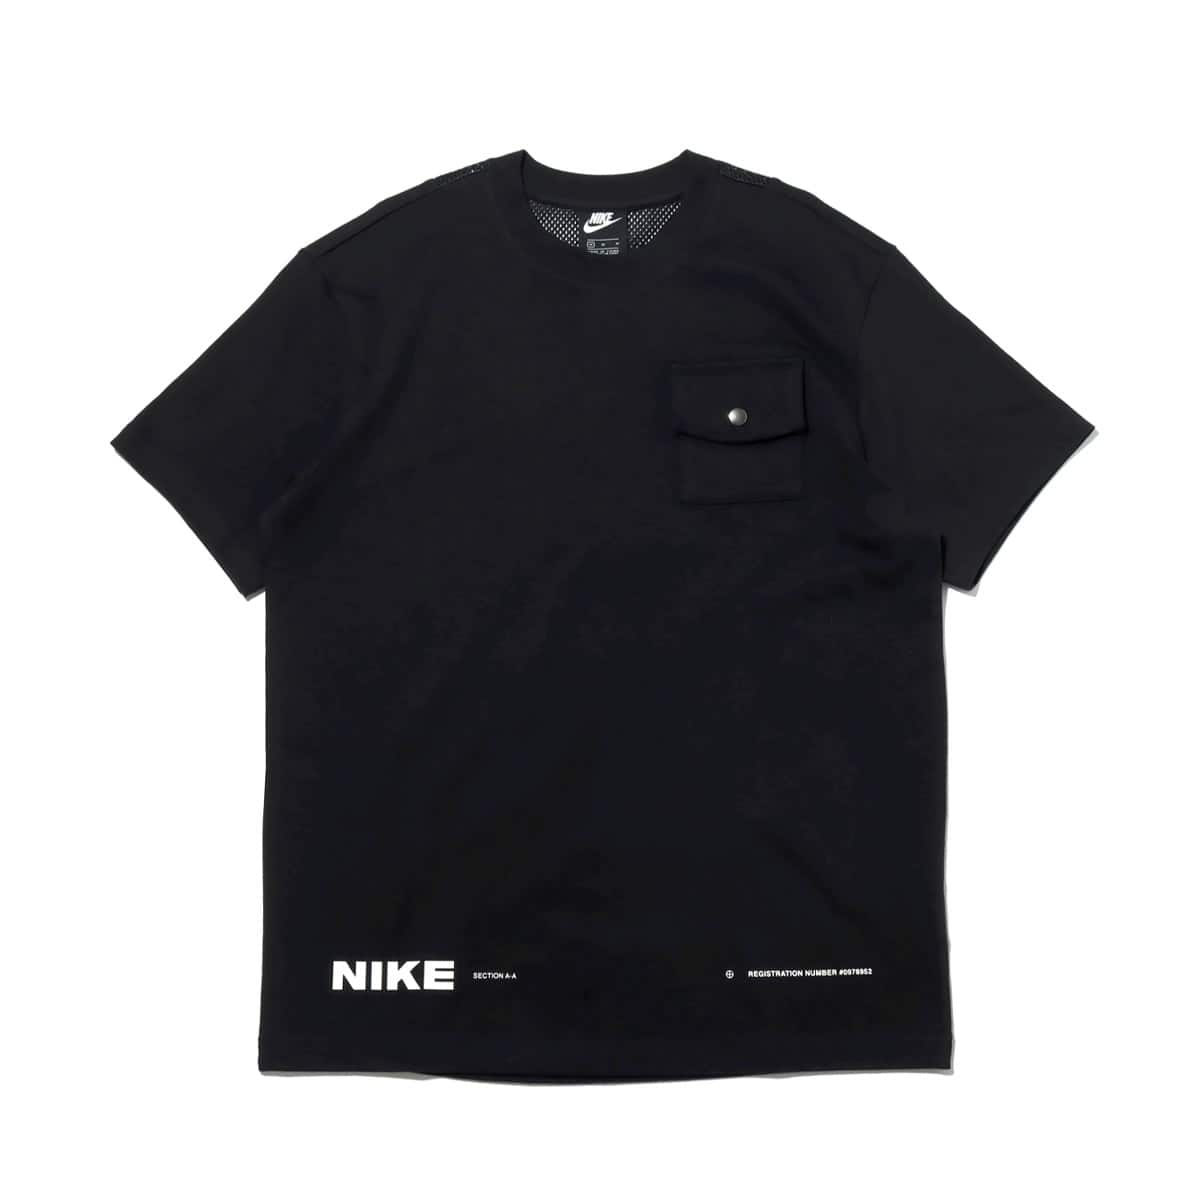 NIKE M トウキョウ シティパック S/S Tシャツ